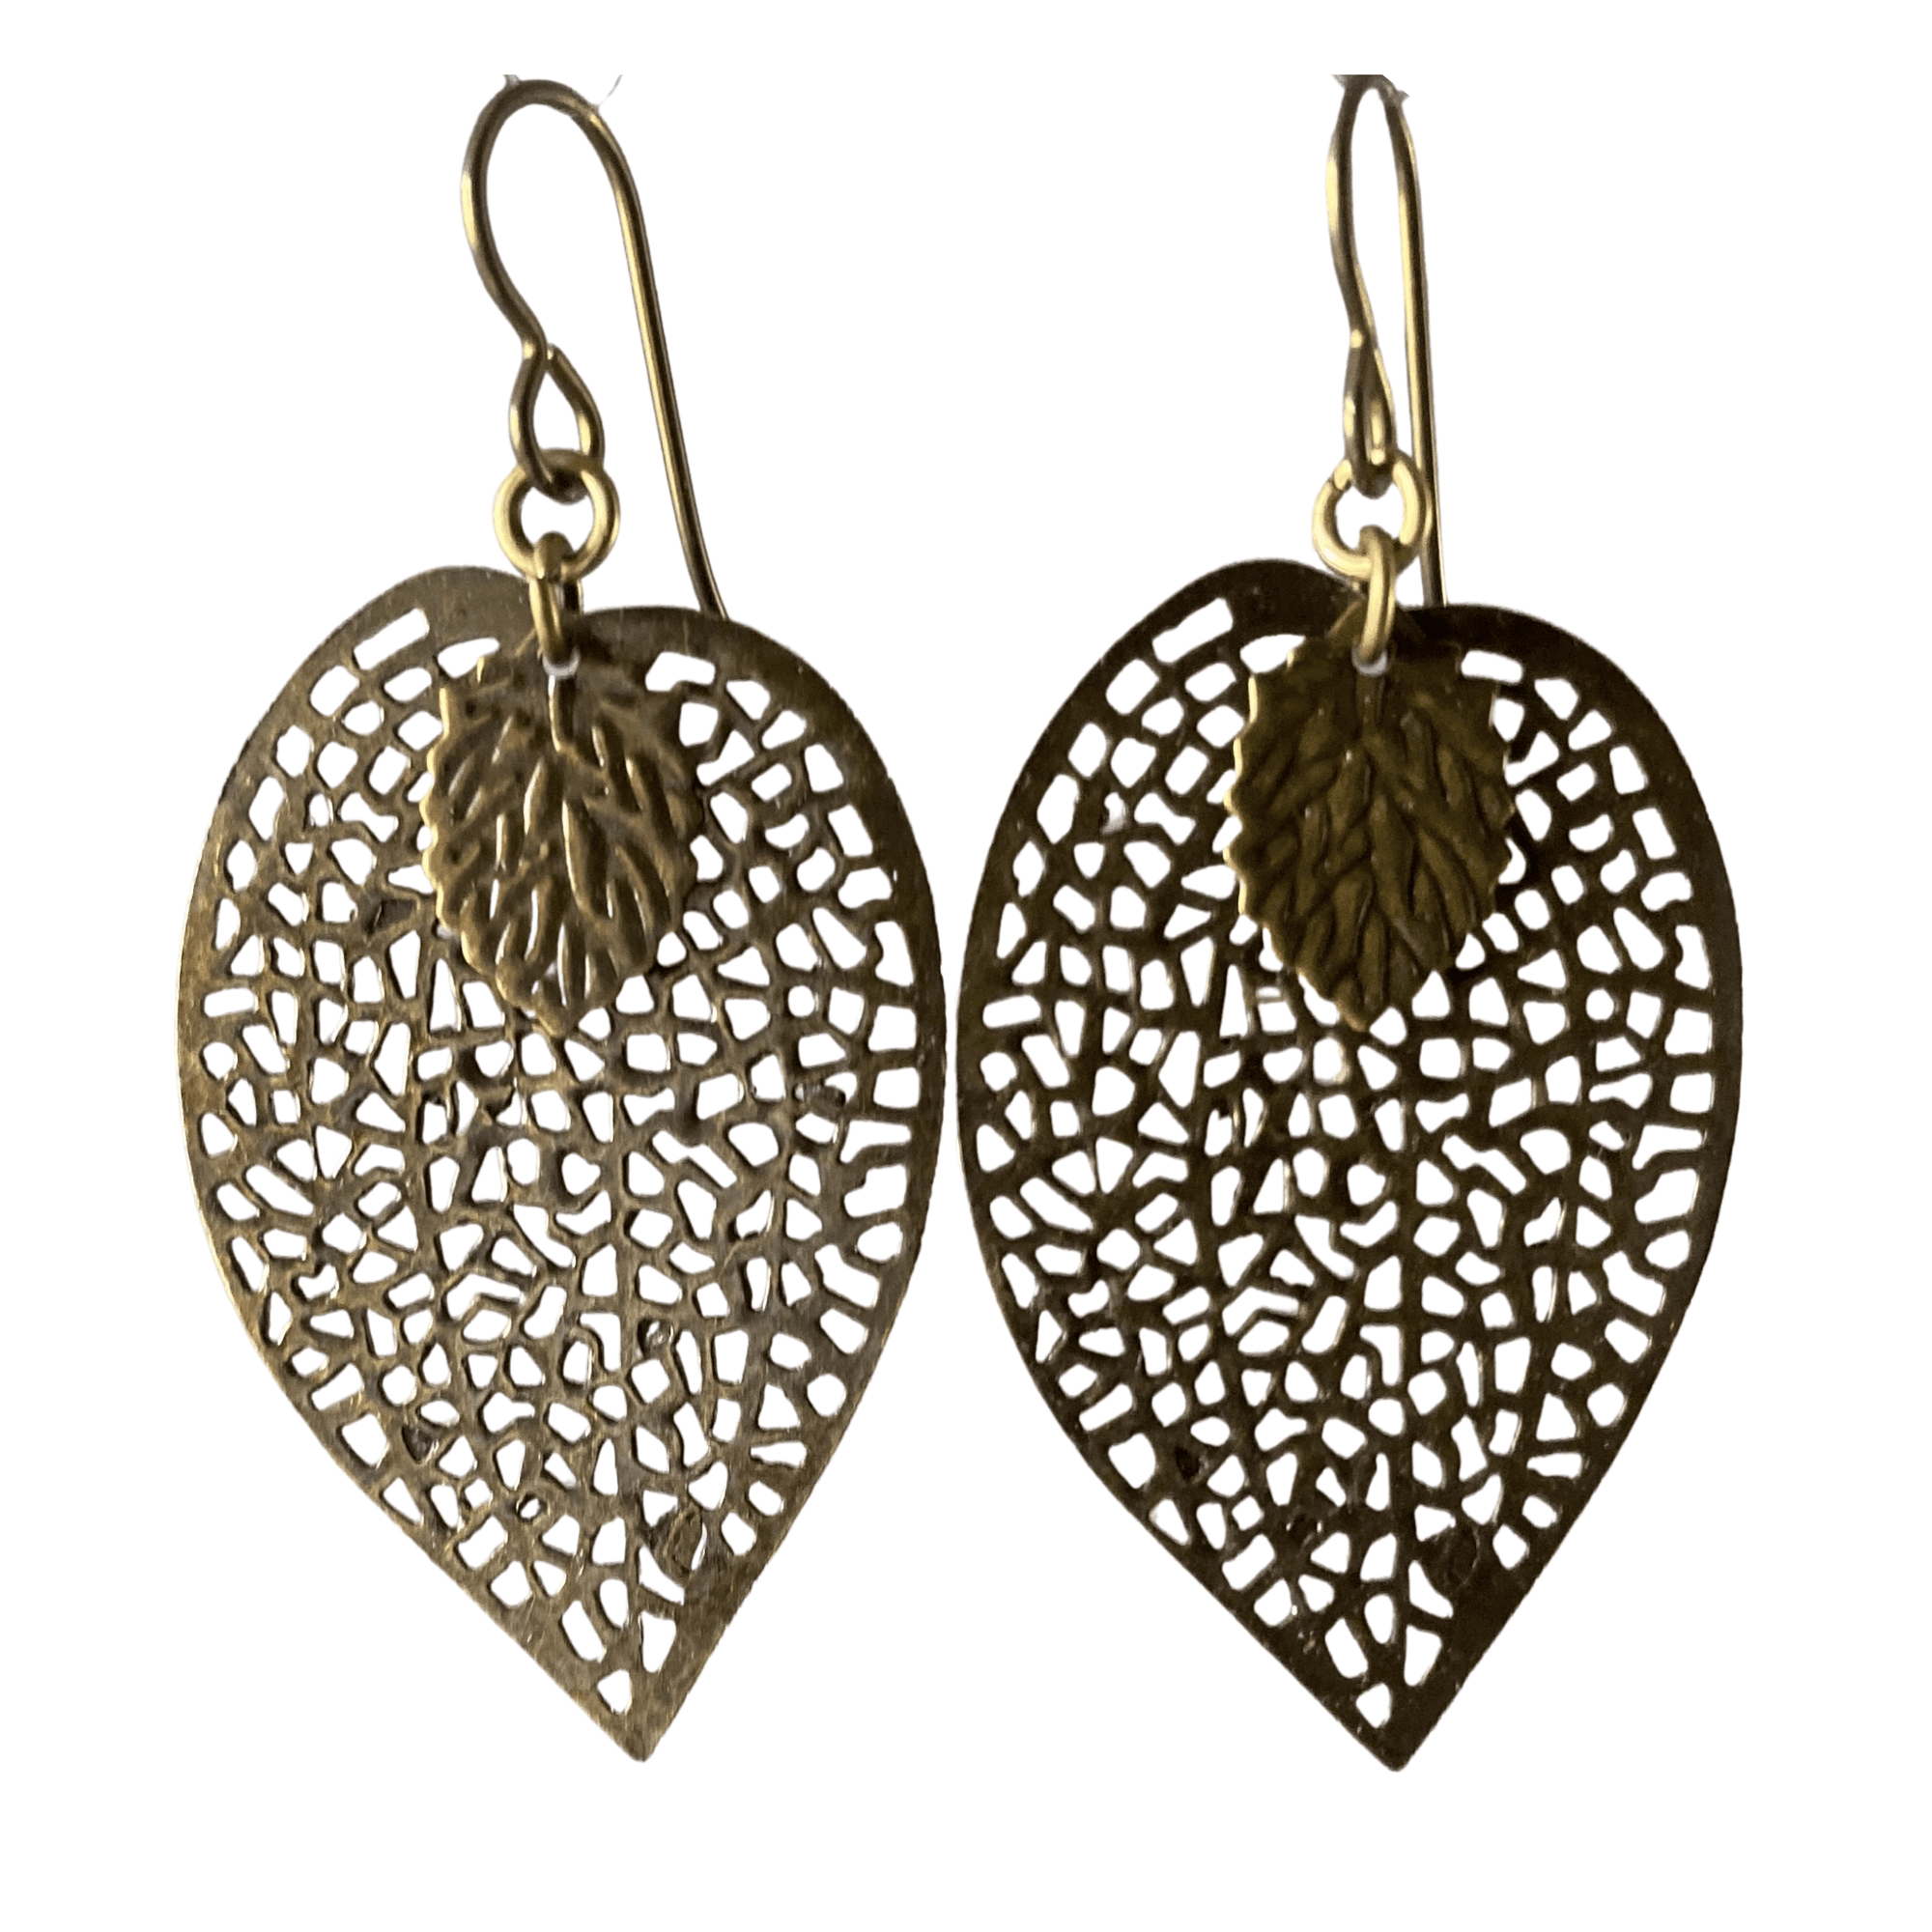 Antique Brass Leaf Filigree Earrings for Sensitive Ears-Earrings- Creative Jewelry by Marcia